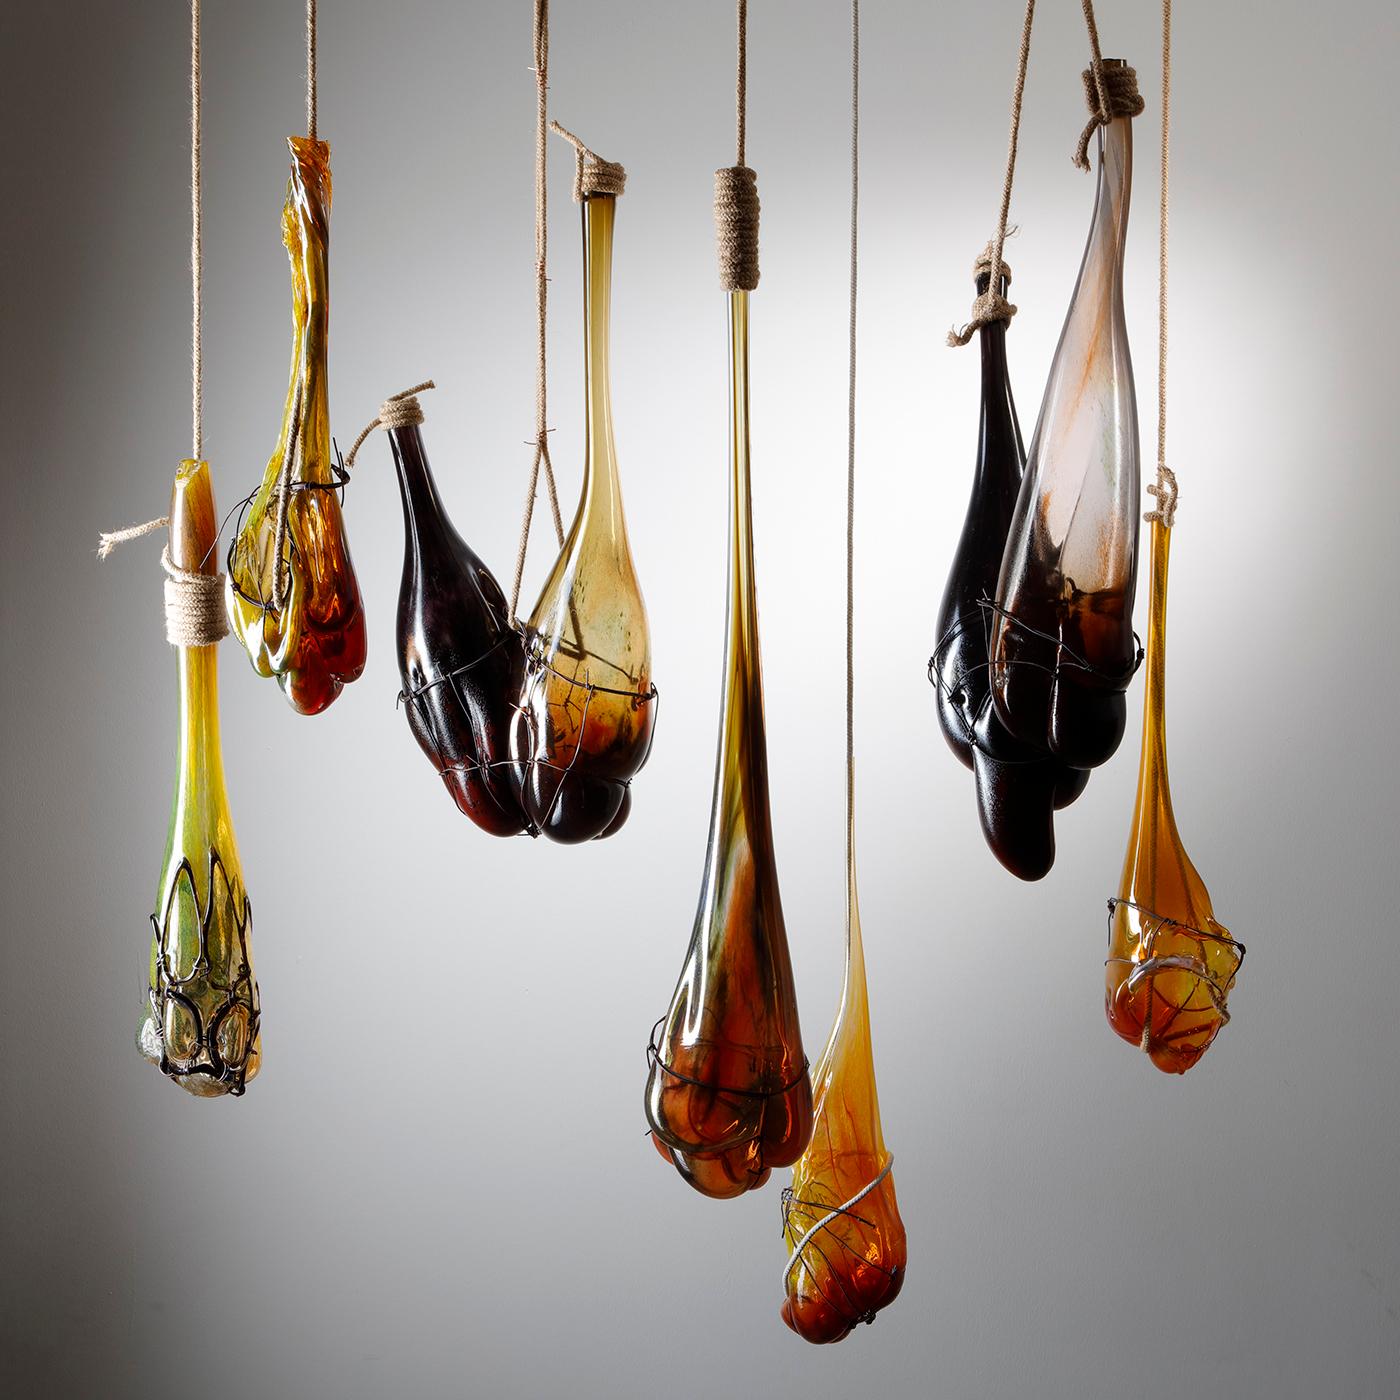 Strange fruit Installation est une sculpture suspendue unique de l'artiste britannique Chris Day, créée à partir de verre soufflé et sculpté à la main, d'acier, de corde de jute, de fil électrique récupéré et de crochets de boucher.

Ayant grandi